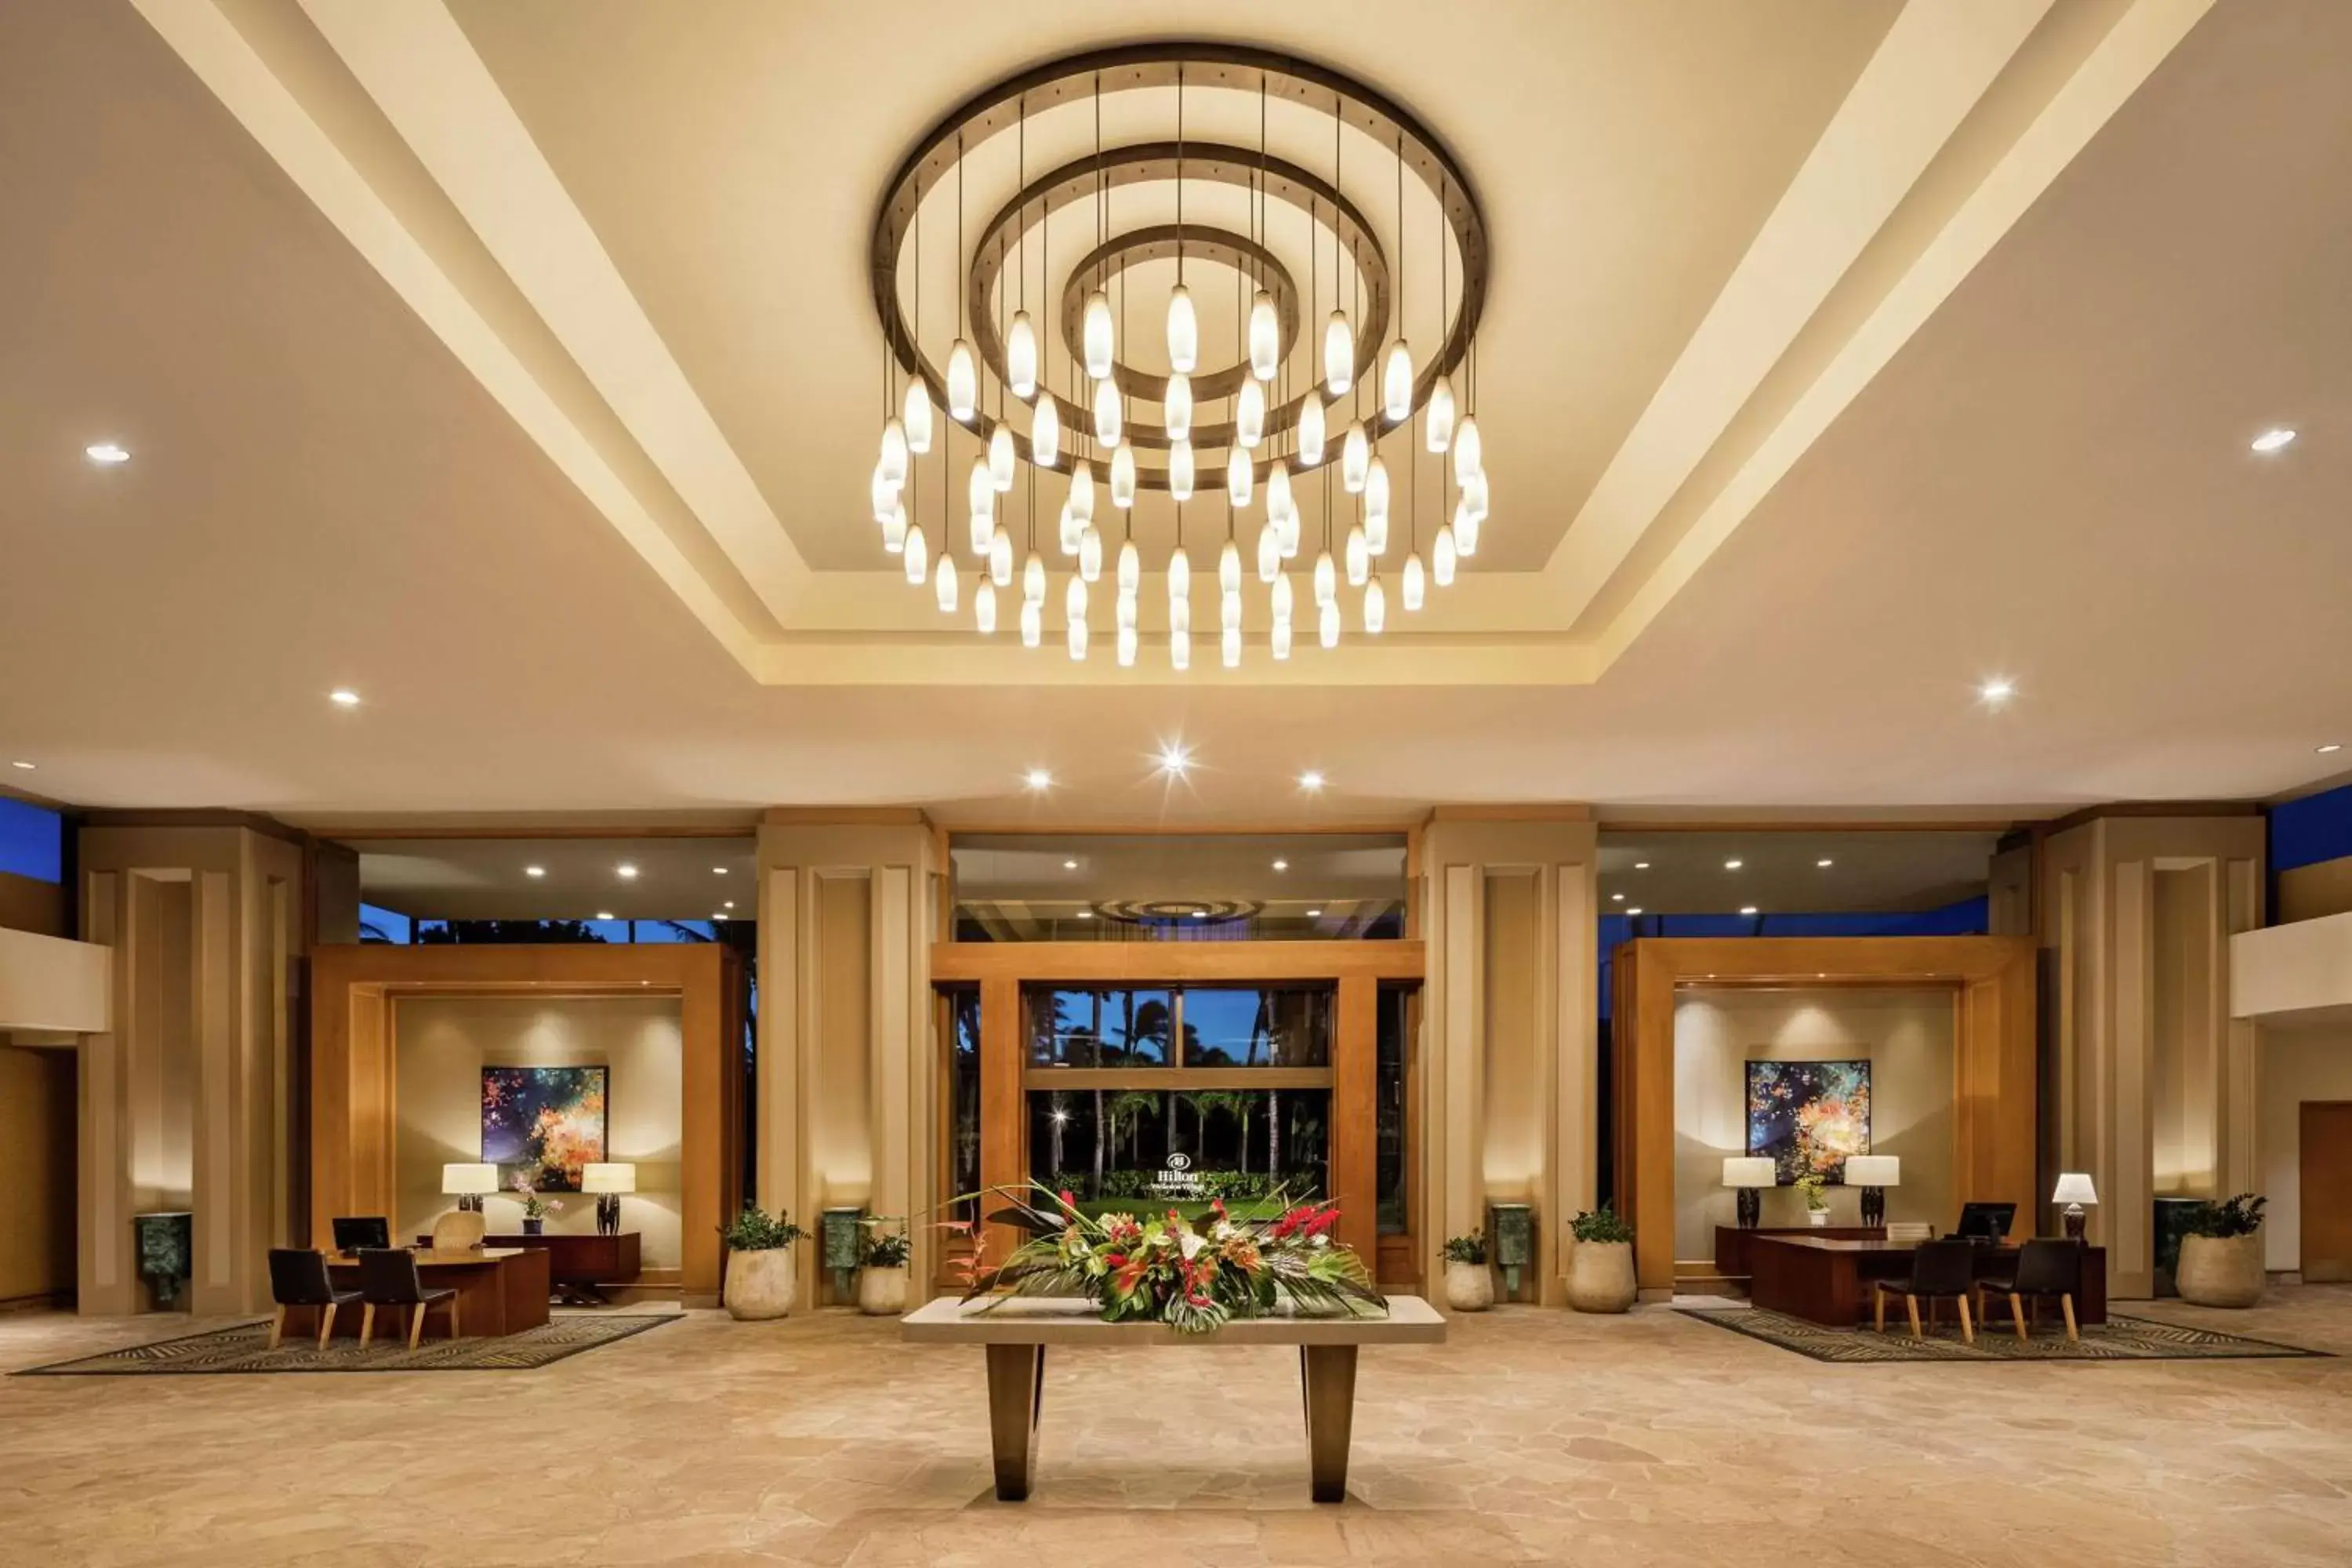 Lobby or reception, Lobby/Reception in Hilton Waikoloa Village